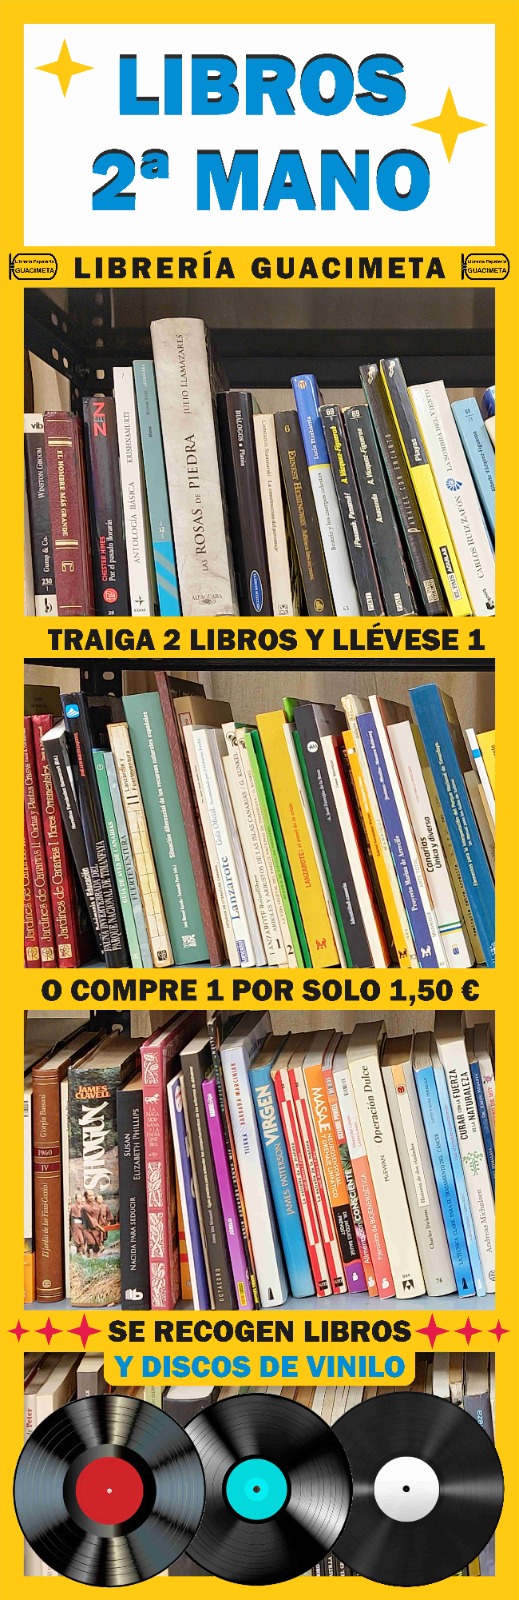 Traiga 2 libros o vinilo y lleve 1 o compre 1 por solo 1,50€. Recojo libros y vinilos.